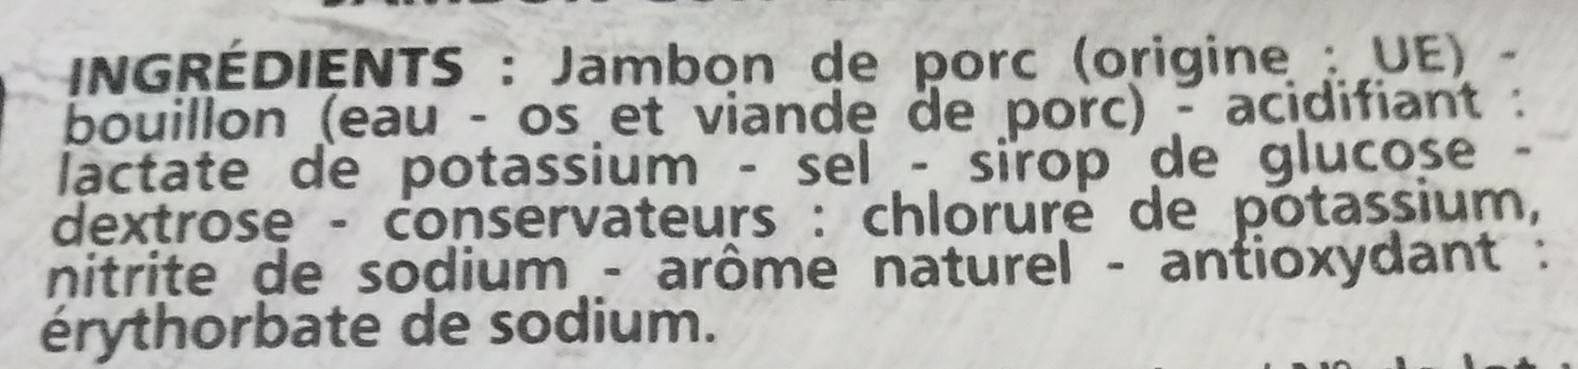 Jambon de Paris découenné dégraissé -25% de sel par rapport à la moyenne des jambons cuits choix du marché - Ingrédients